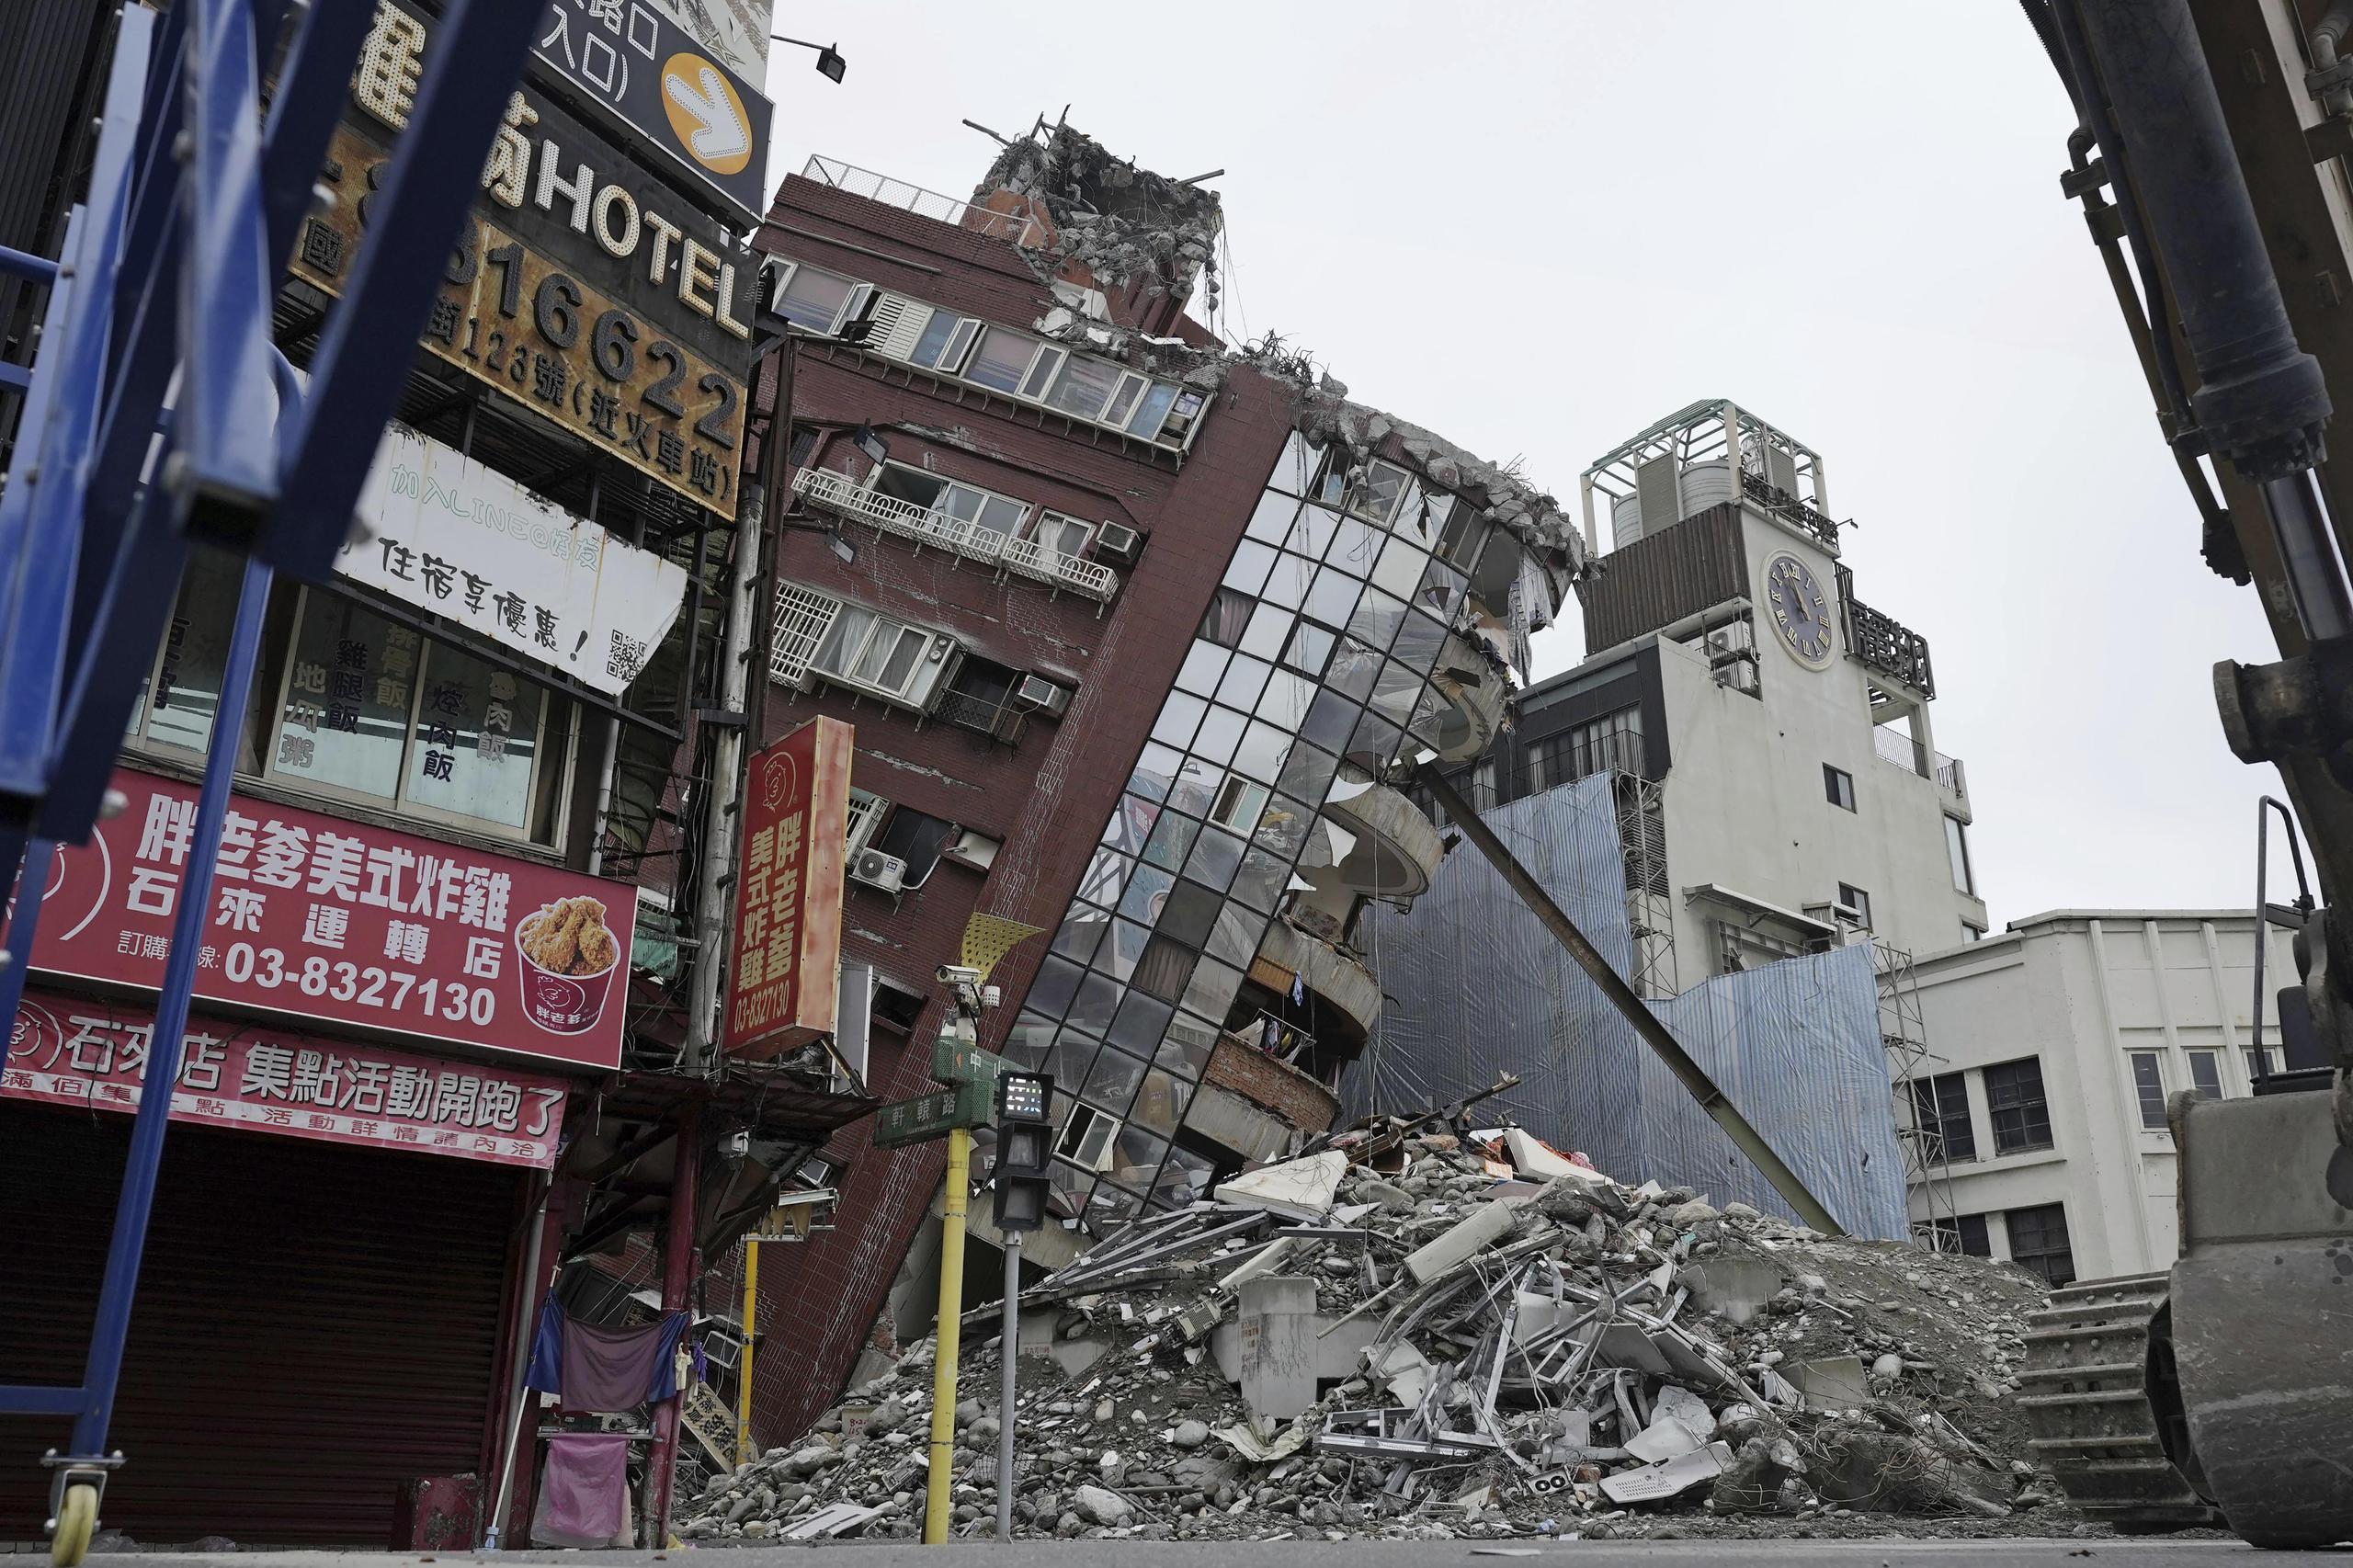 El inmueble rojo, con unas 10 plantas y que está inclinado sobre una calle de la ciudad de Hualien, se ha convertido en una imagen icónica luego sismo de magnitud 7,4.